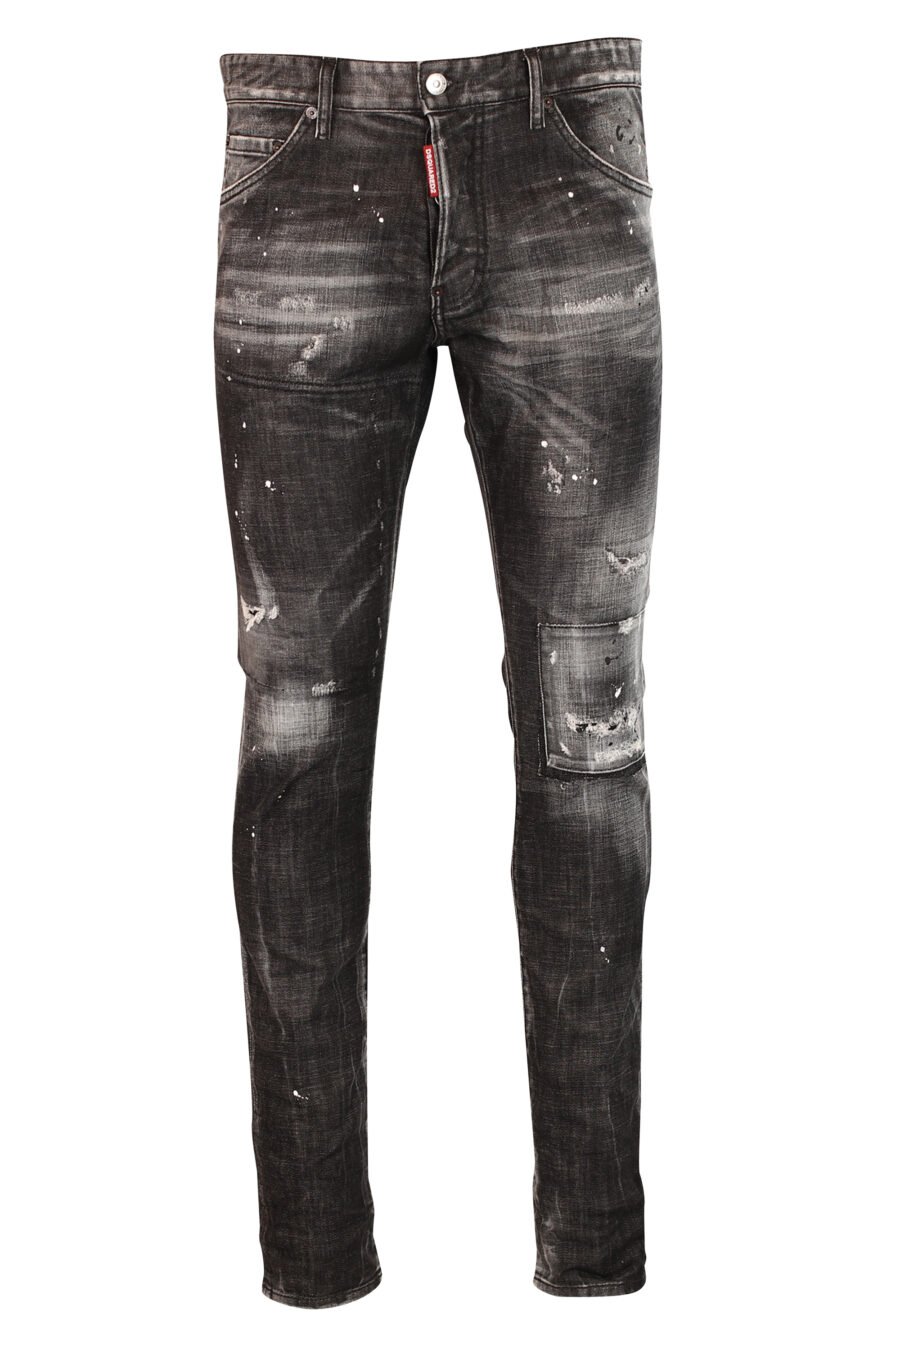 Pantalon en jean noir semi-effiloché et déchiré - 8052134953105